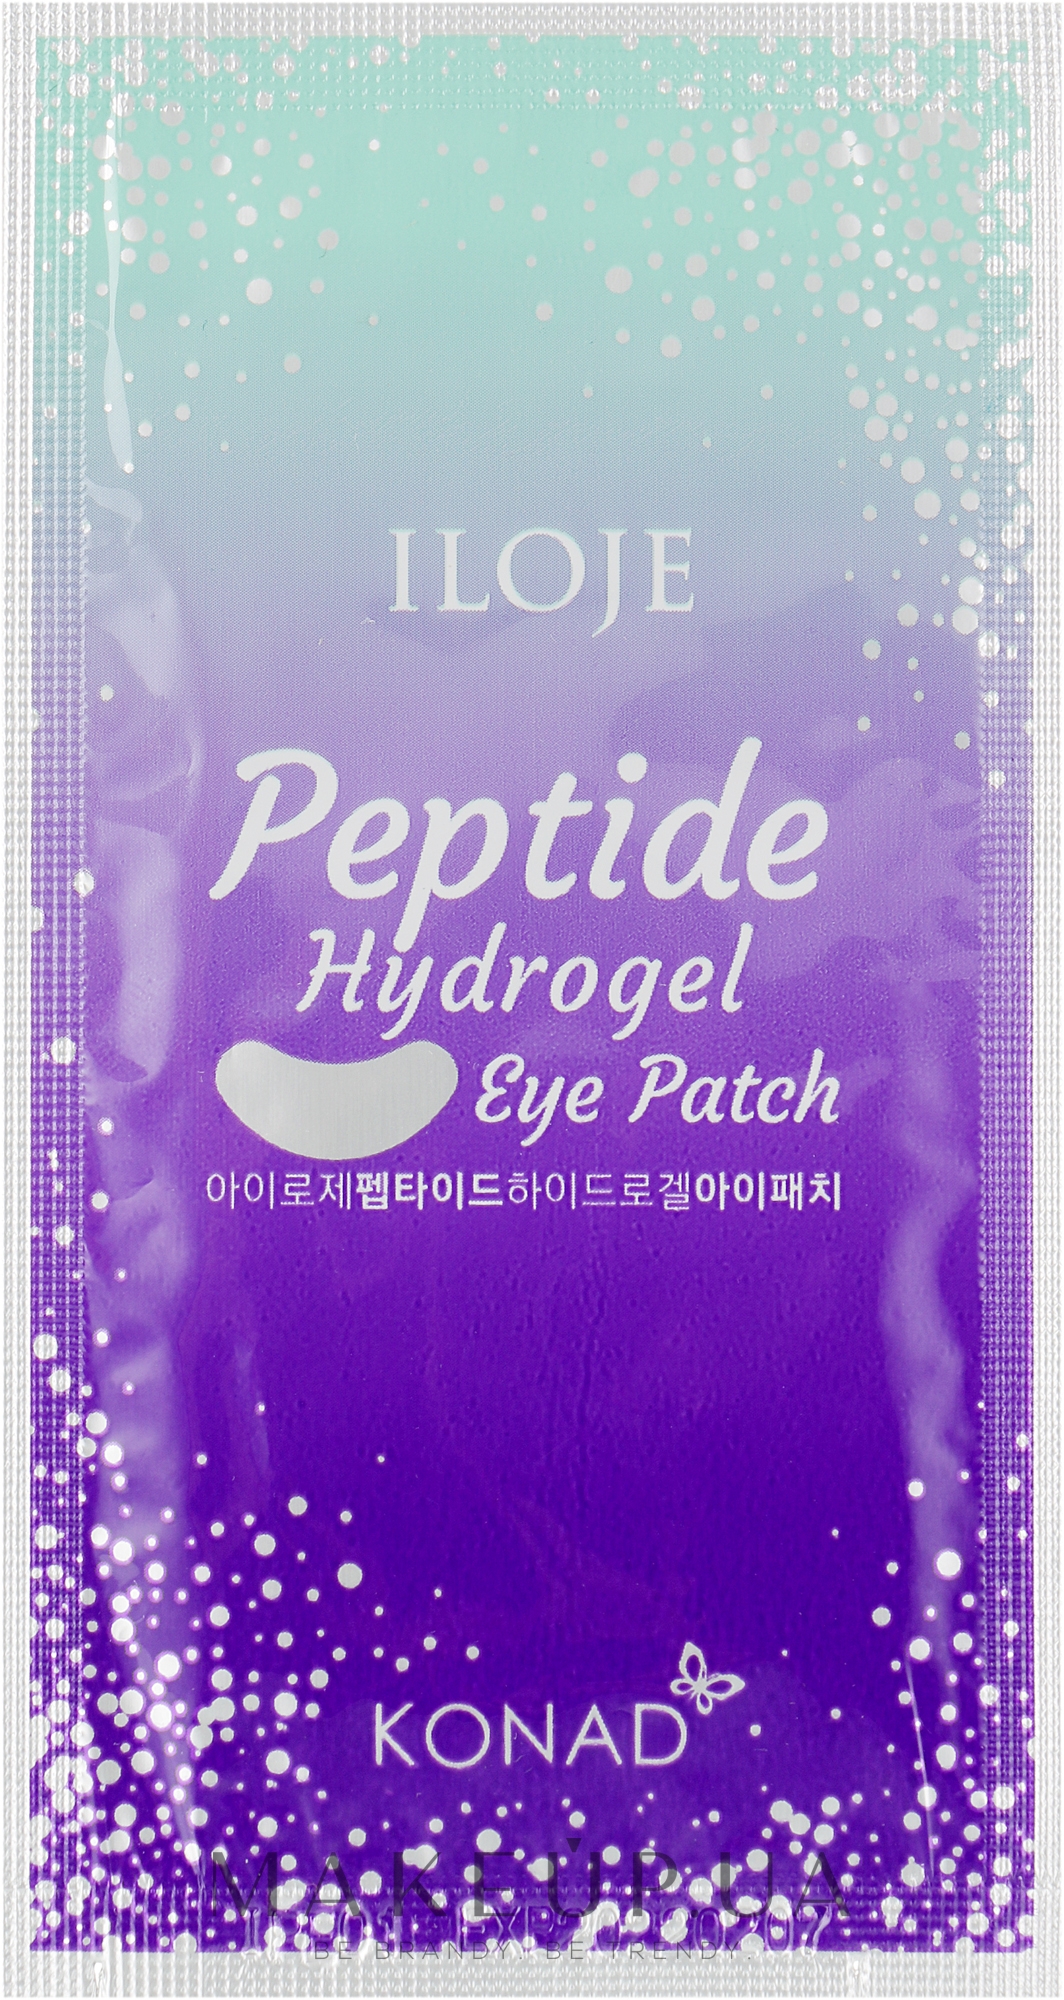 Гідрогелеві патчі під очі з пептидами - Konad Iloje Peptide Hydrogel Eye Patch — фото 1шт